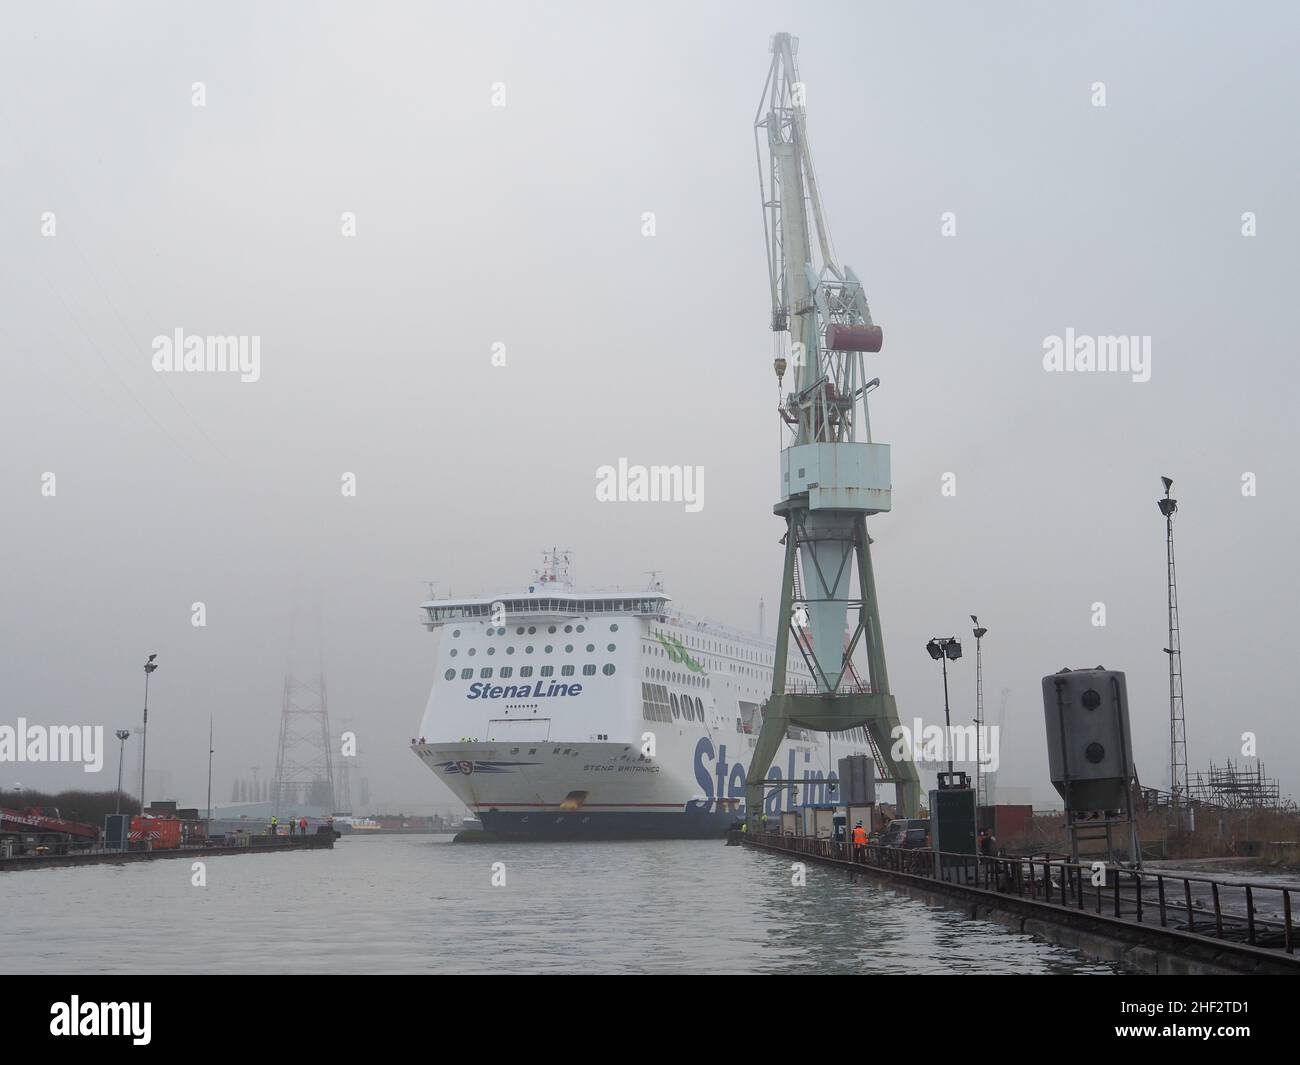 El ferry de la línea de Stena Stena Brittanica se está maniobrando en un muelle seco en el puerto de Amberes, Bélgica Foto de stock